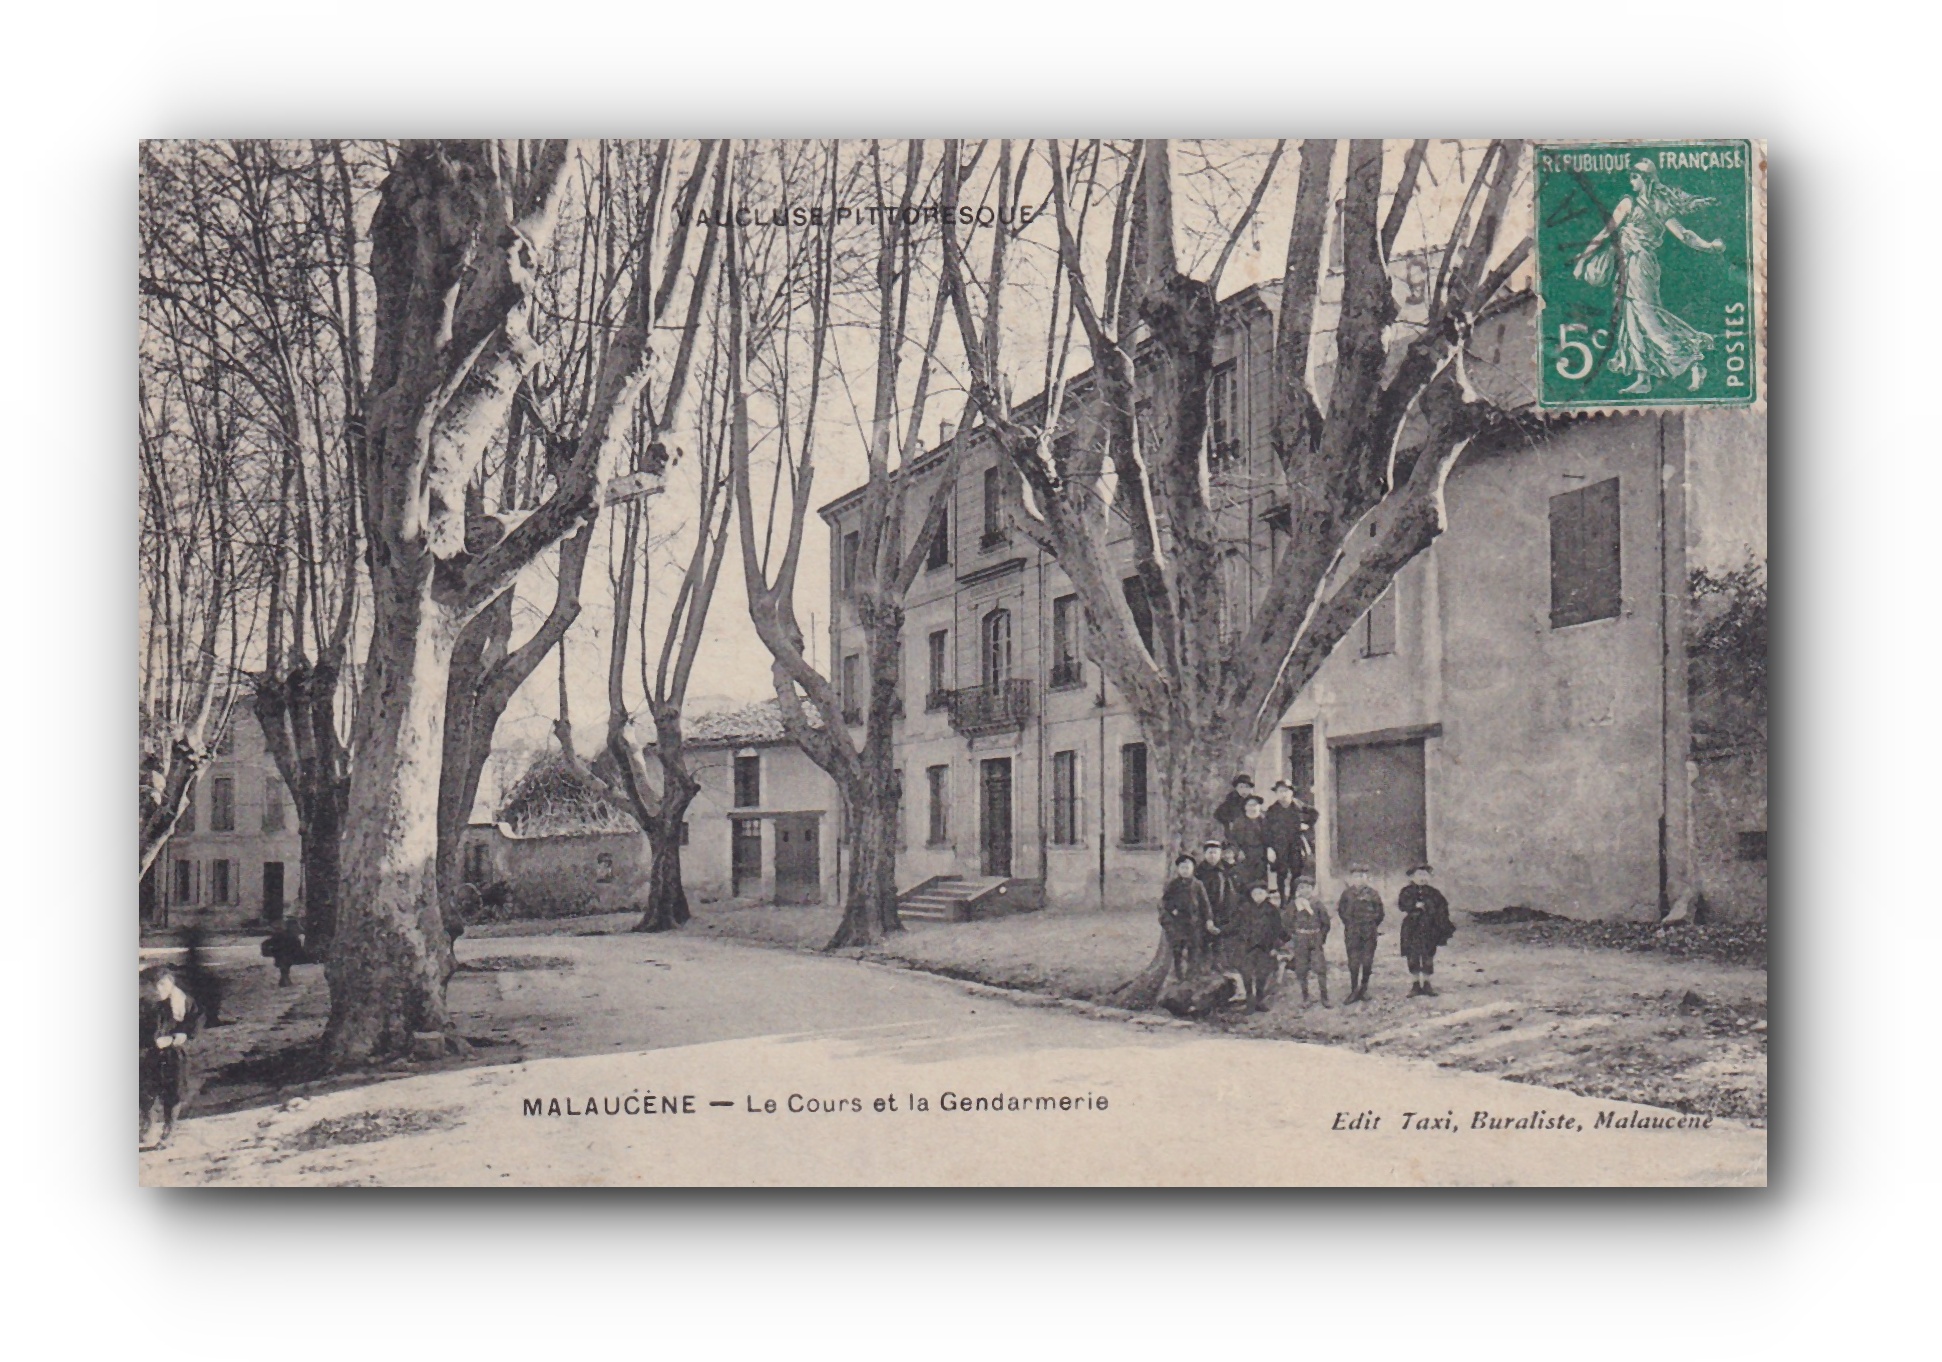 - Le Cours et la Gendarmerie - MALAUCÈNE - 15.05.1911 -